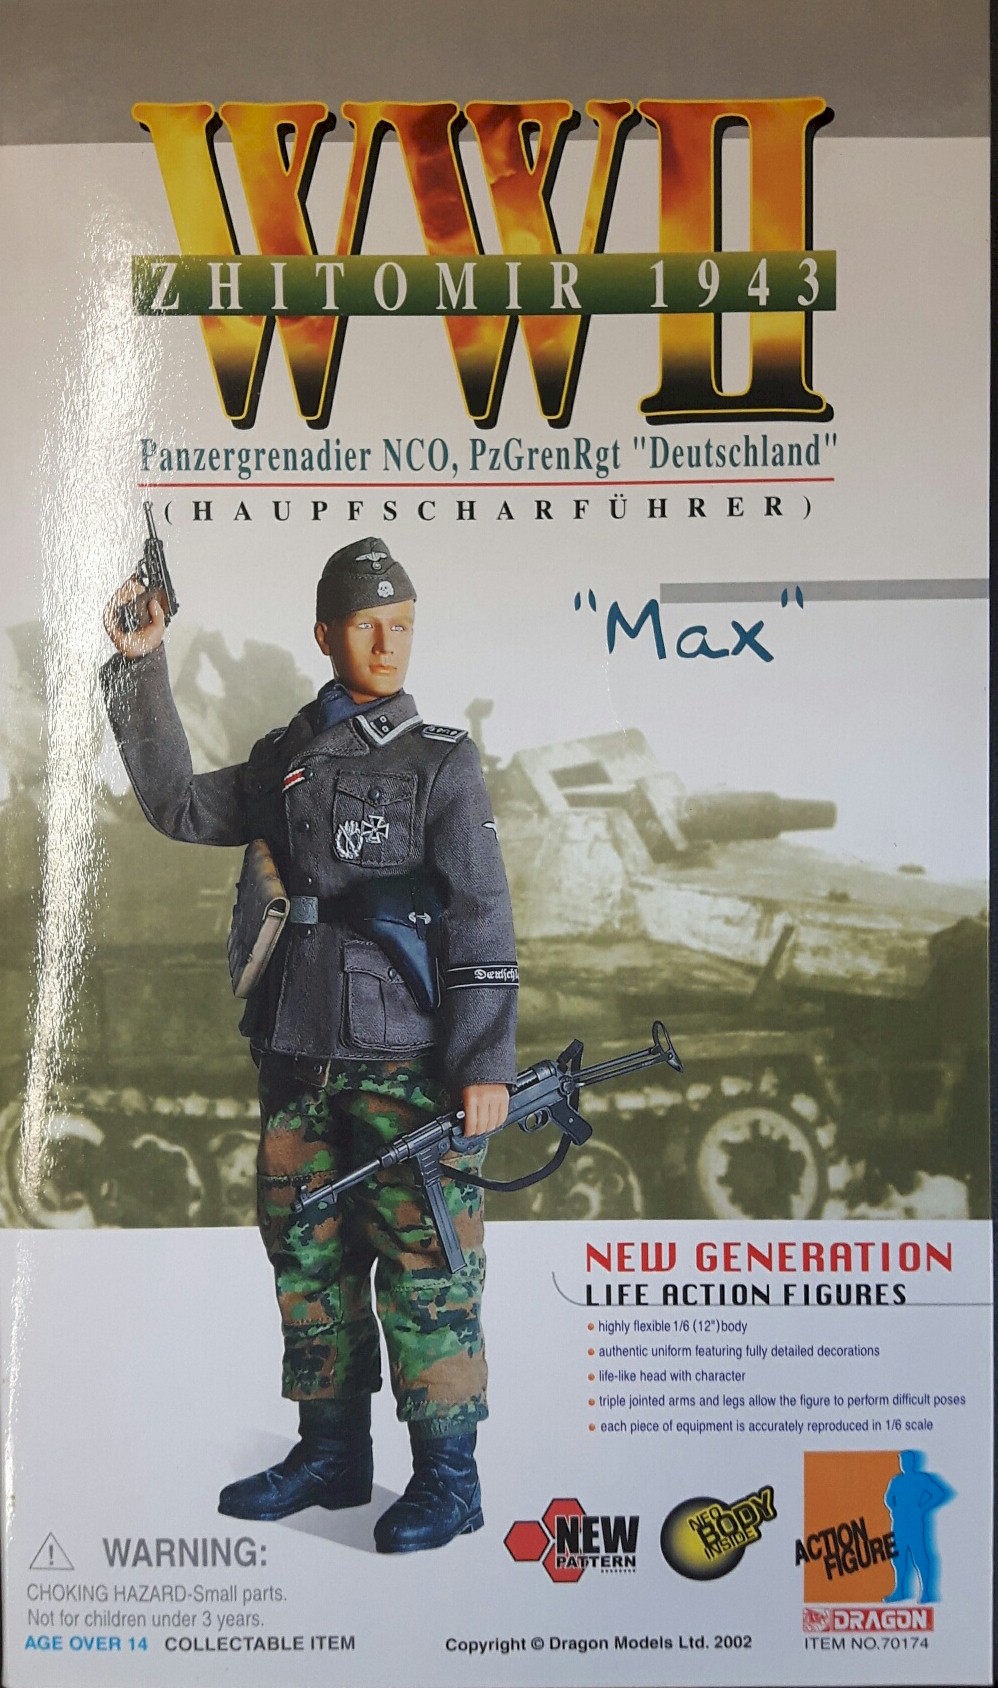 Zhitomir 1943 Panzergrenadier NCO, PzGrenRgt "Deutschland" (Haupfscharfuhrer) "Max" 